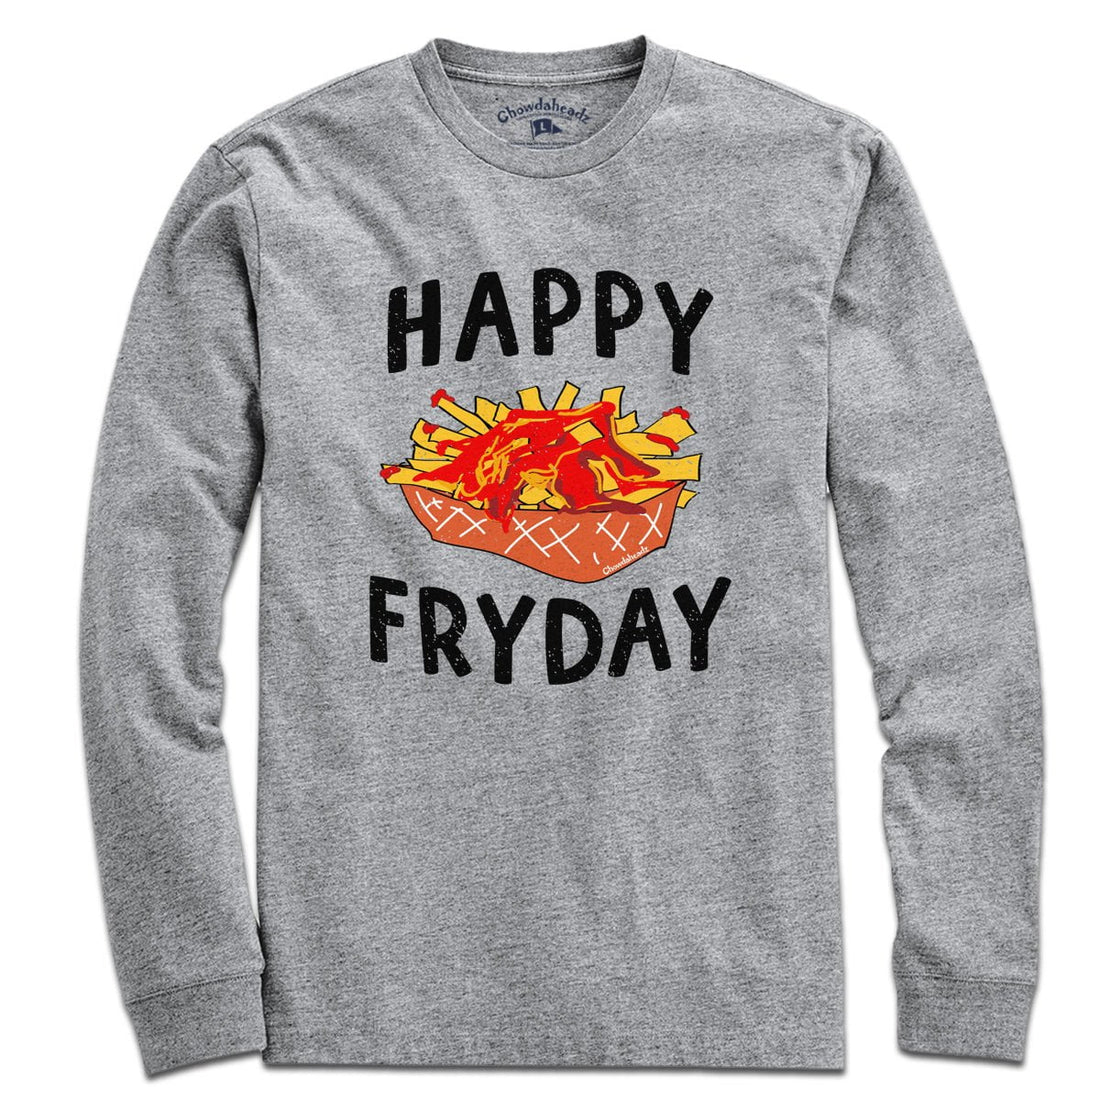 Happy Fryday T-Shirt - Chowdaheadz